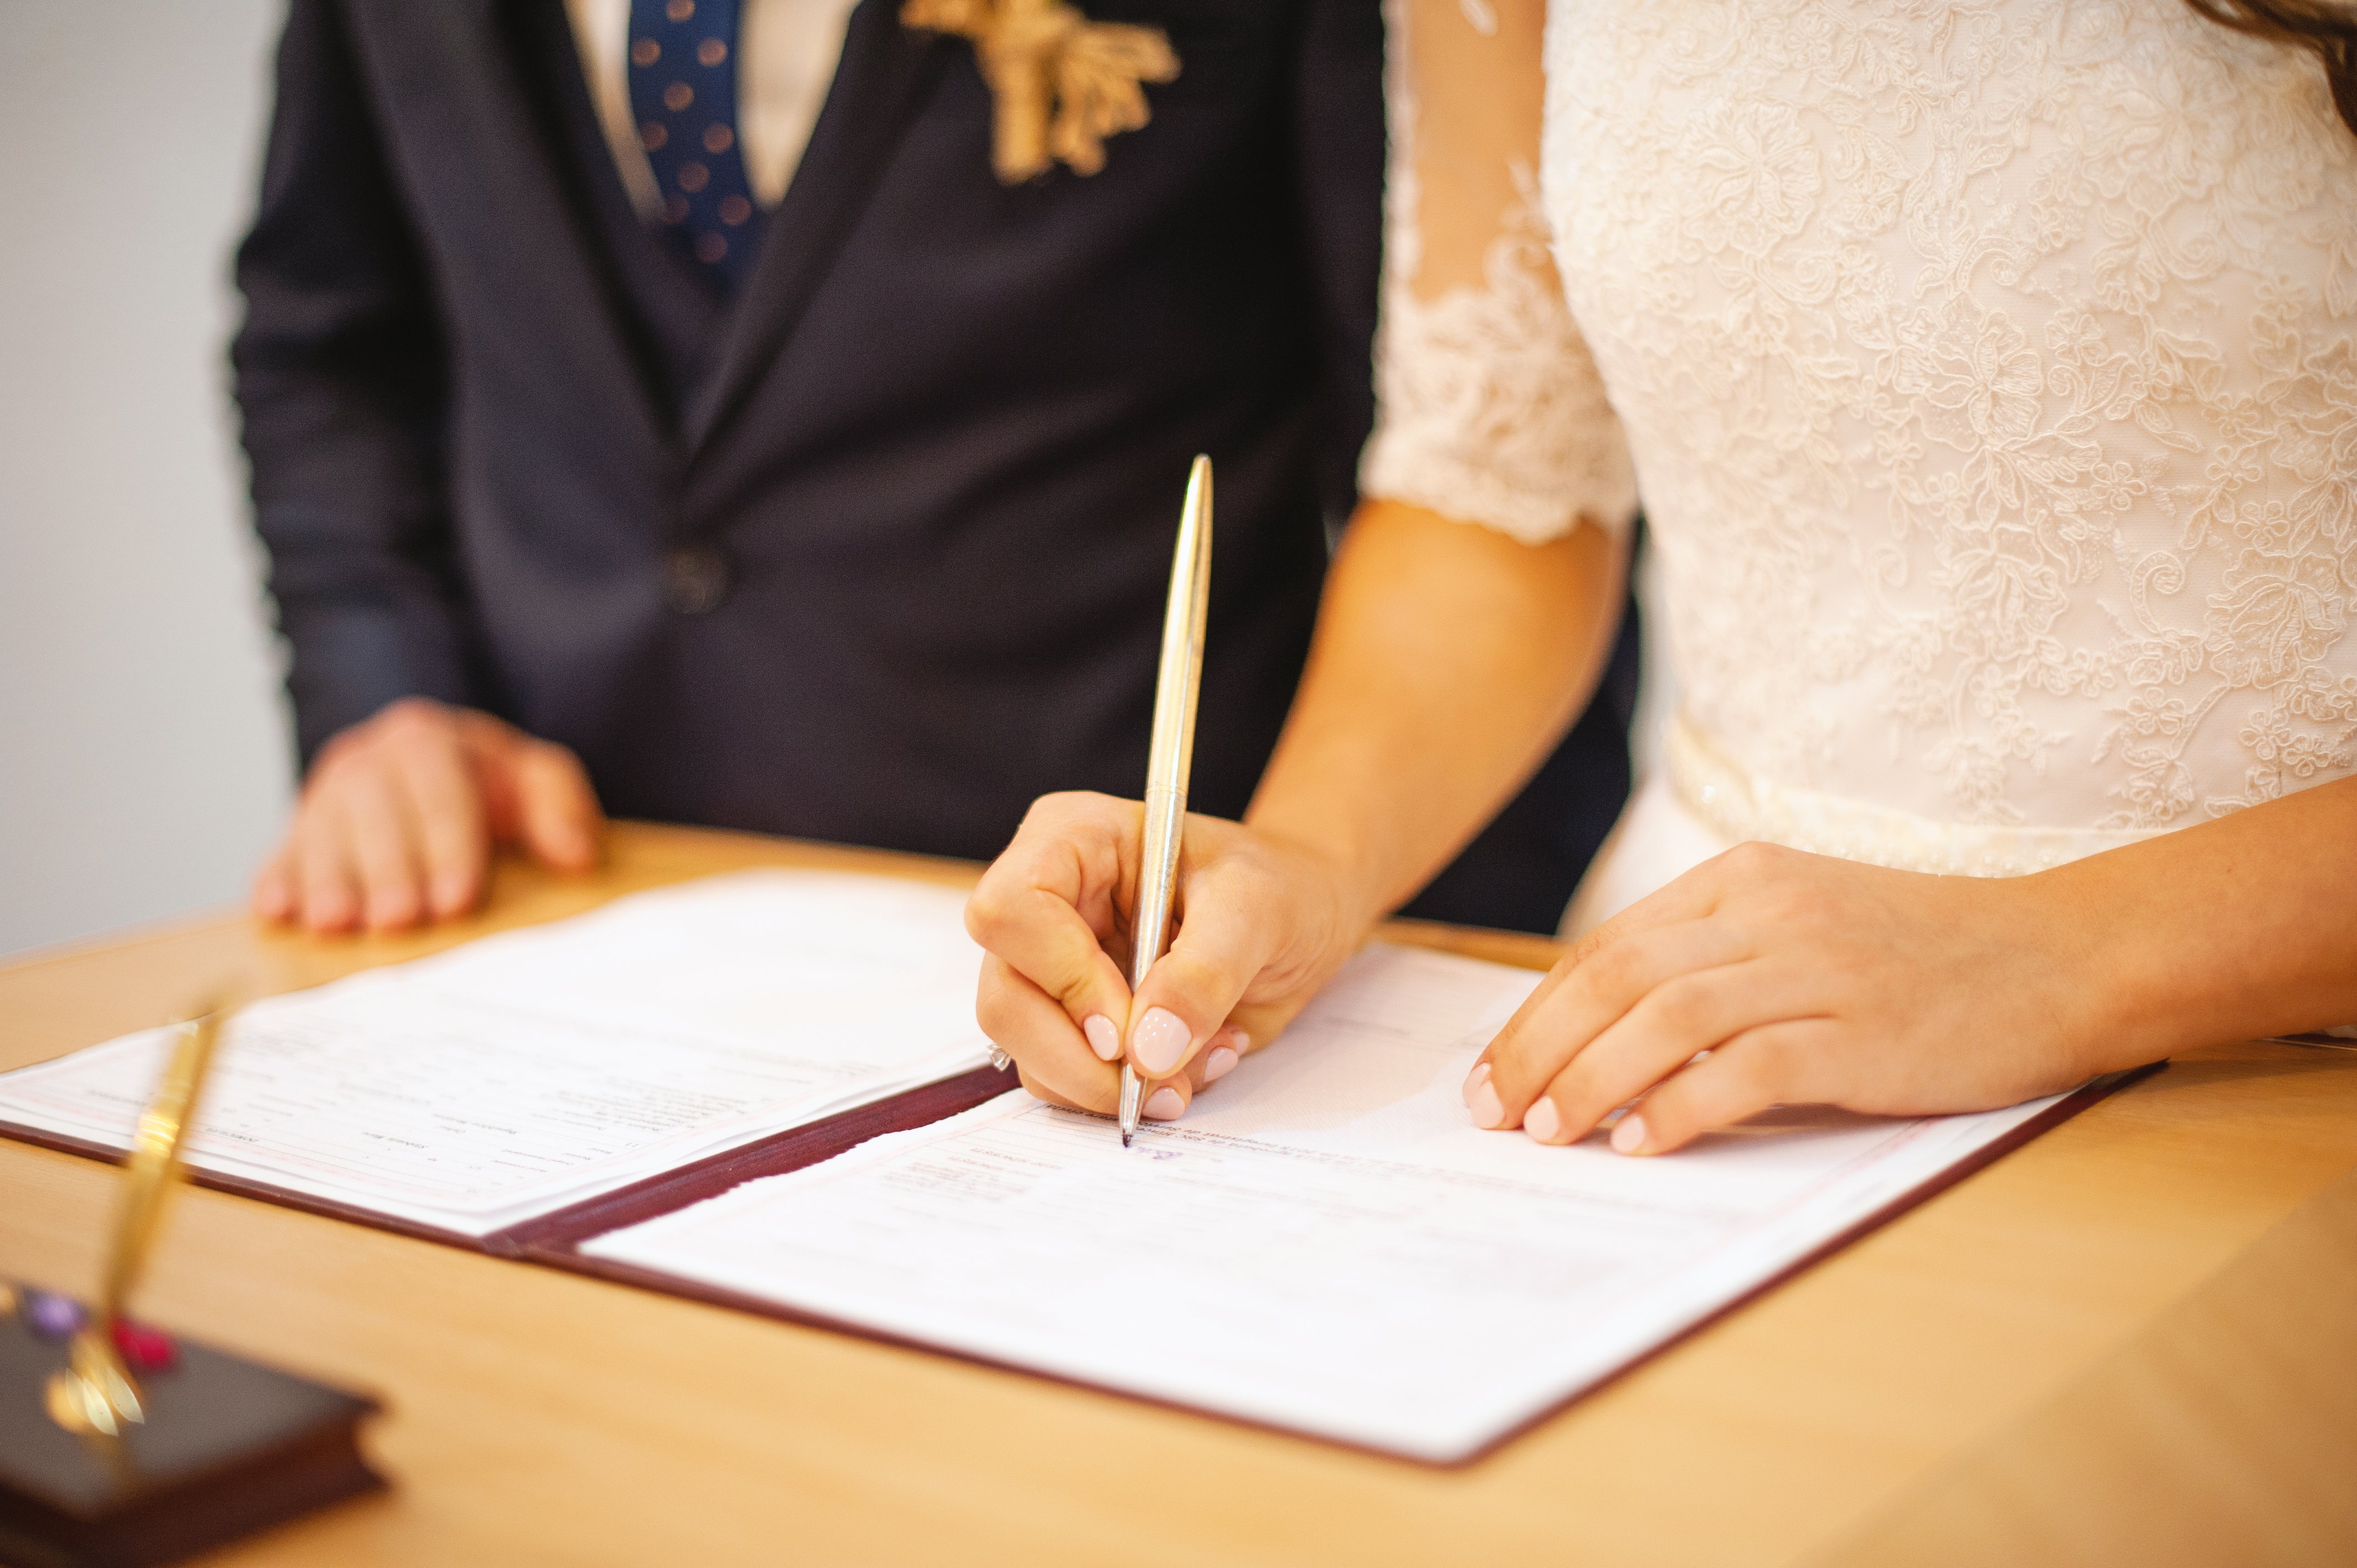 La boda civil permite algunas licencias en aspectos económicos en la pareja